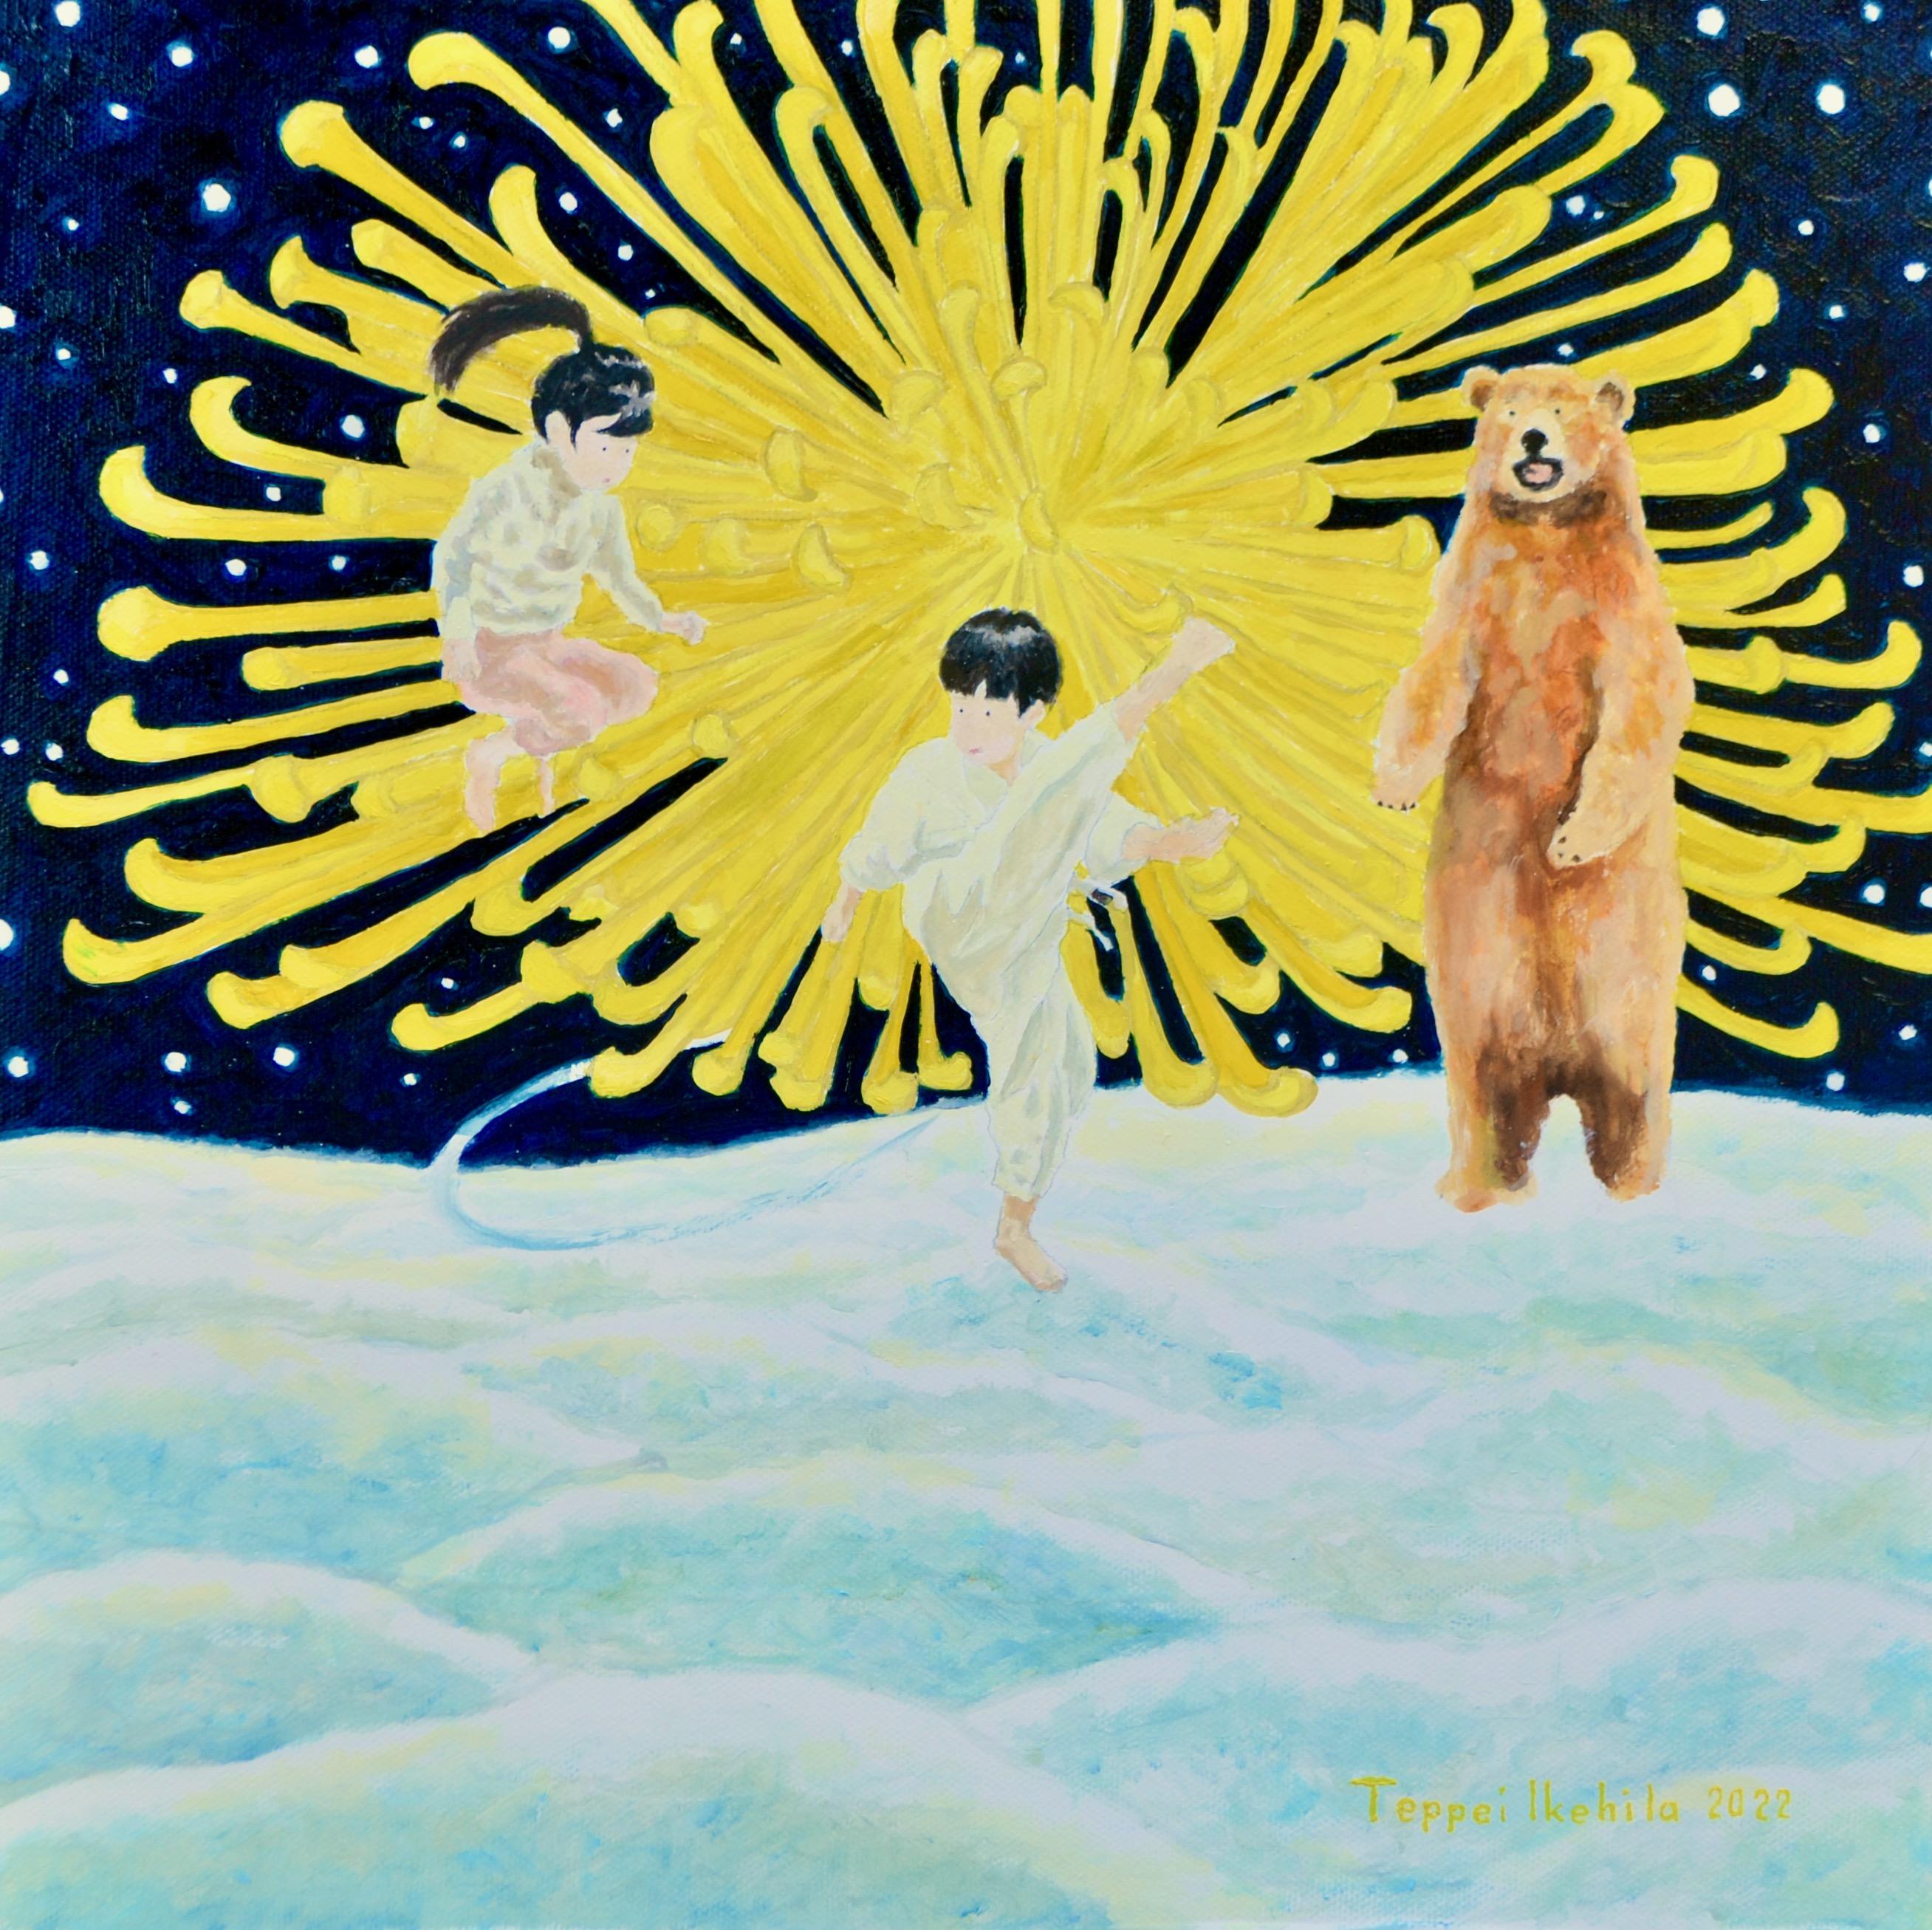 Japanische zeitgenössische Kunst von Teppei Ikehila – Der Bär möchte, dass man den Kampf aufhört